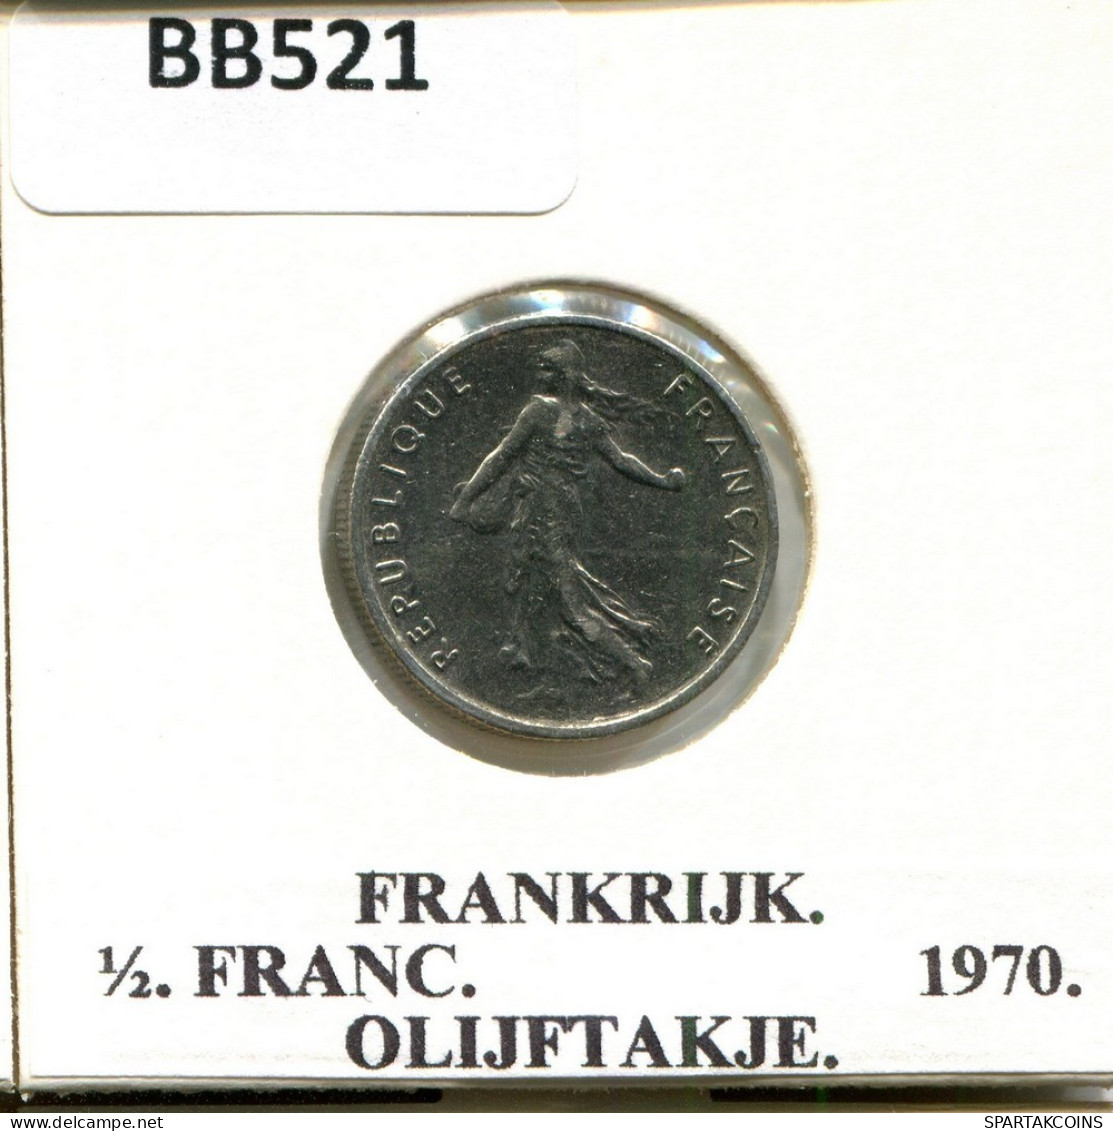 1/2 FRANC 1970 FRANCE Coin #BB521.U.A - 1/2 Franc